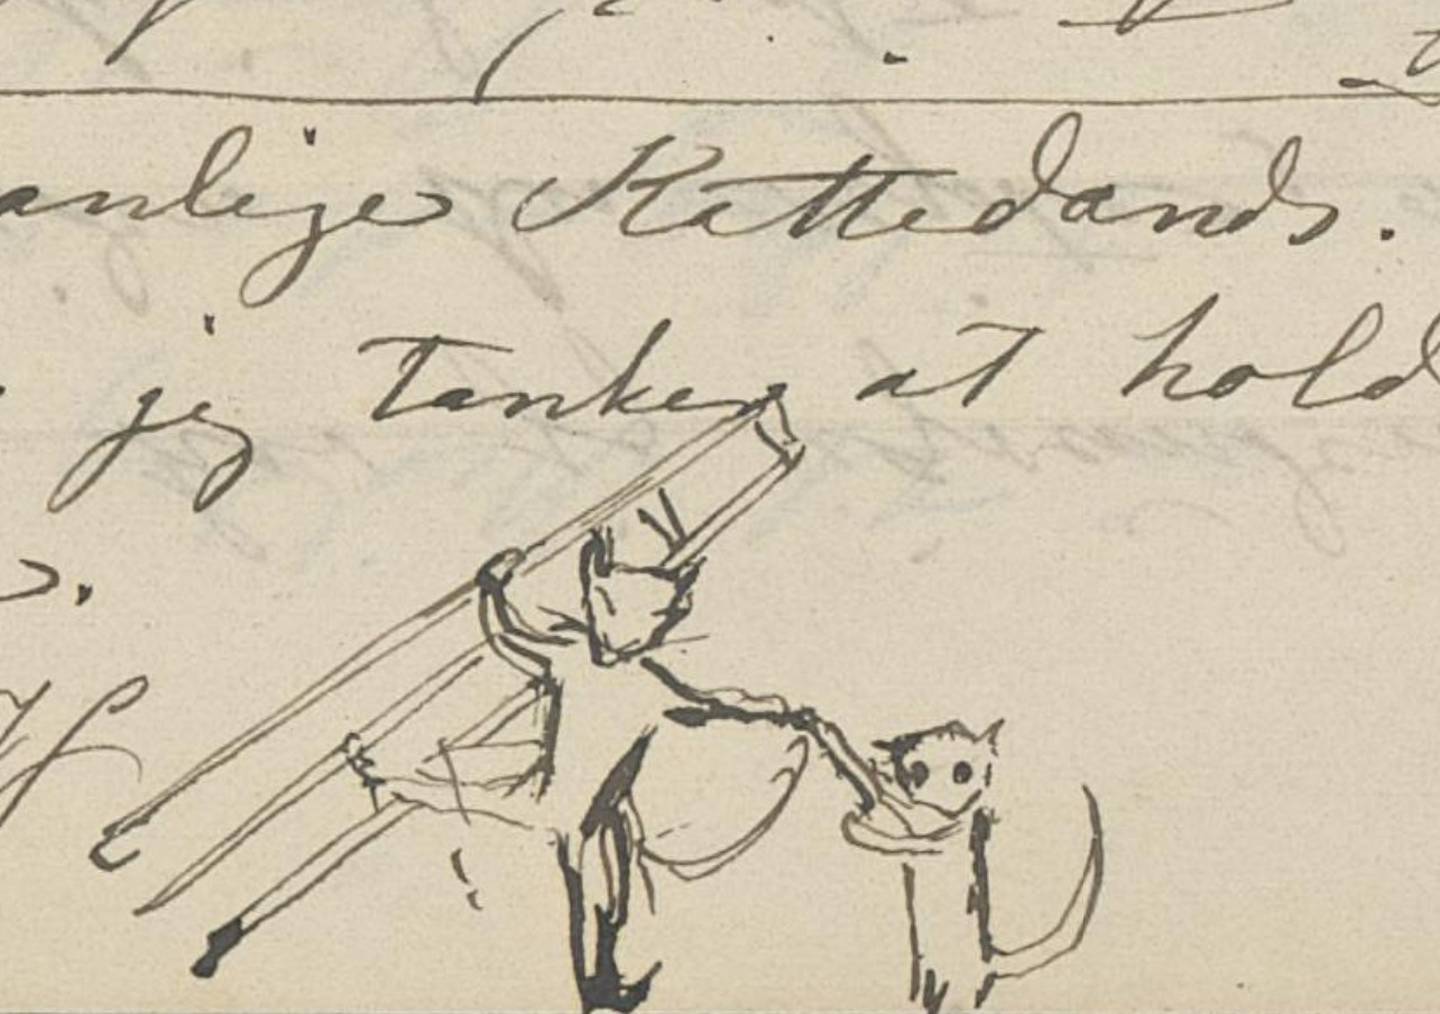 Tegningen av lille katte-Honoria som river katte-mor vekk fra staffeliet stammer fra et brev Mathilde skrev til Honorias far i 1872.